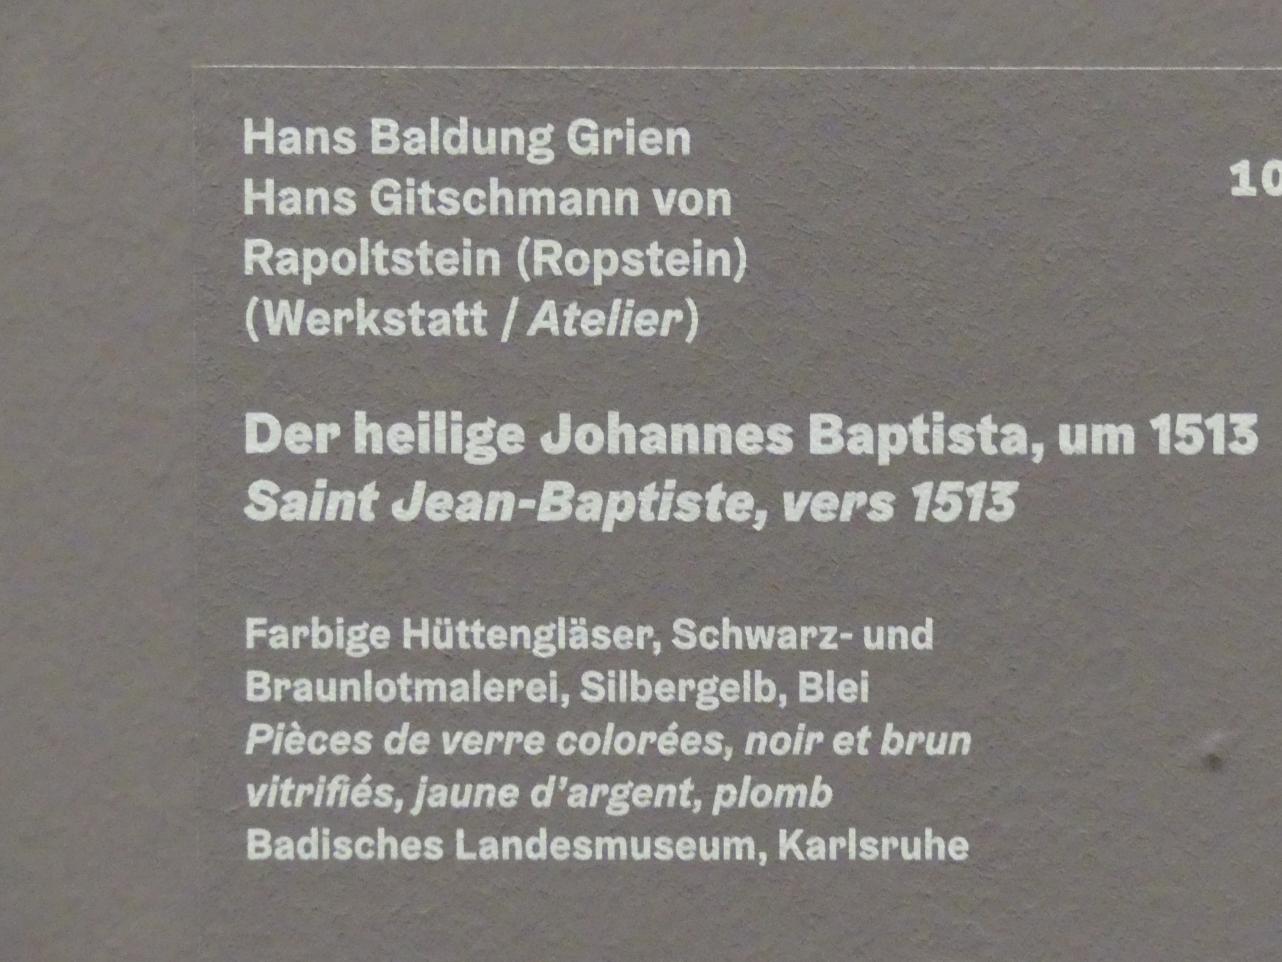 Hans Baldung Grien (1500–1544), Der heilige Johannes Baptista, Karlsruhe, Staatliche Kunsthalle, Ausstellung "Hans Baldung Grien, heilig | unheilig", Saal 4, um 1513, Bild 2/2